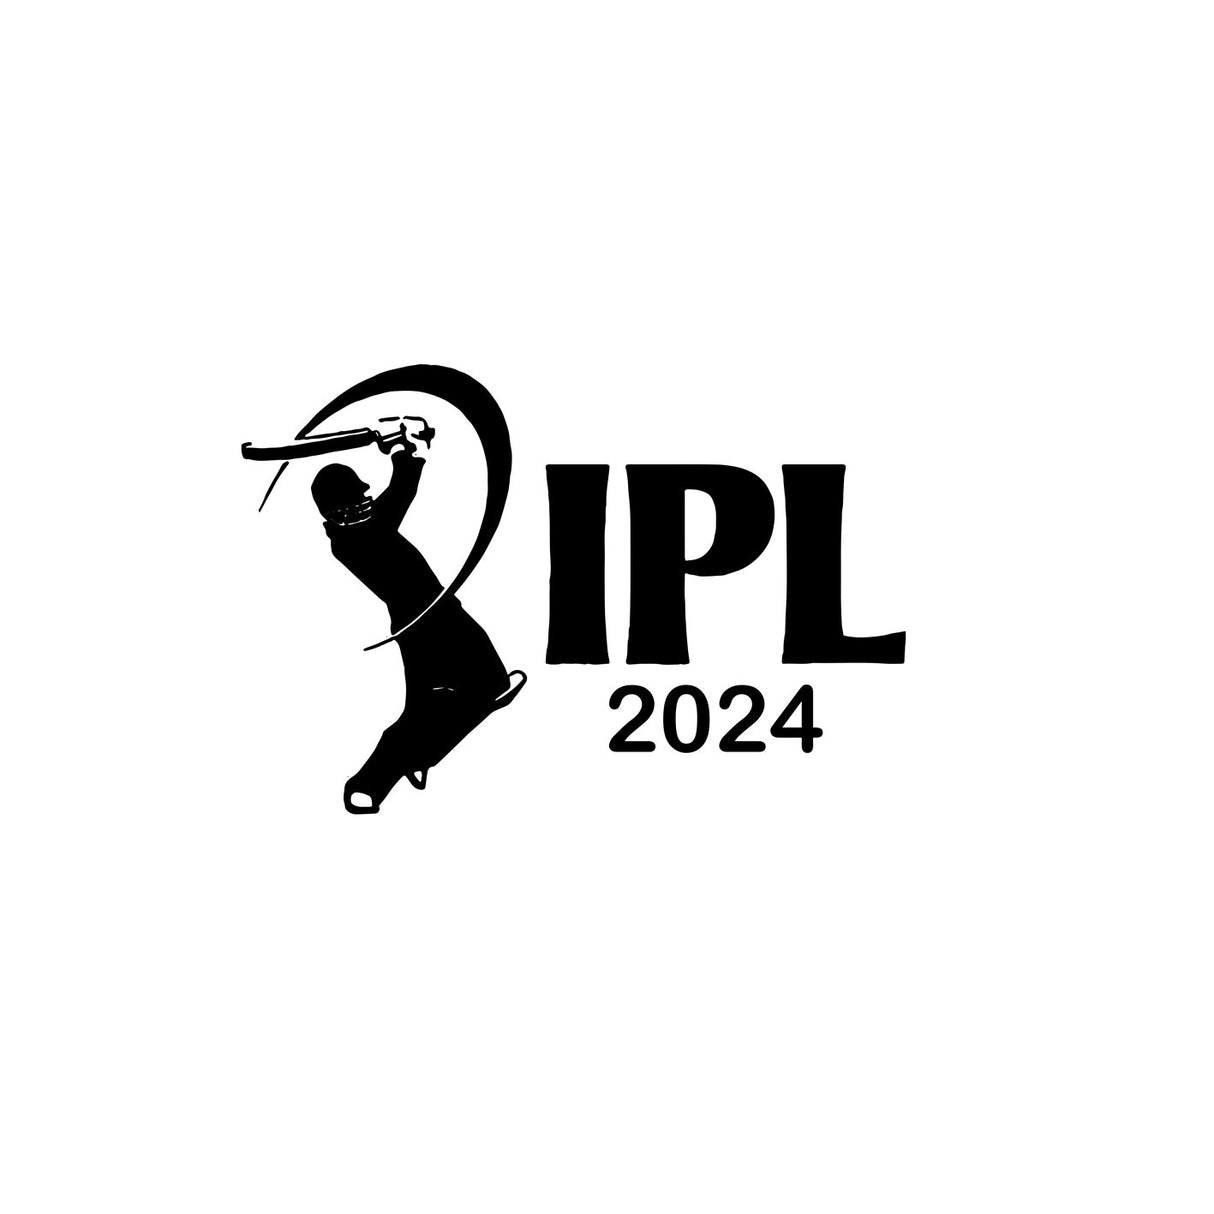 IPL 2024 - Semi Permanent Tattoo